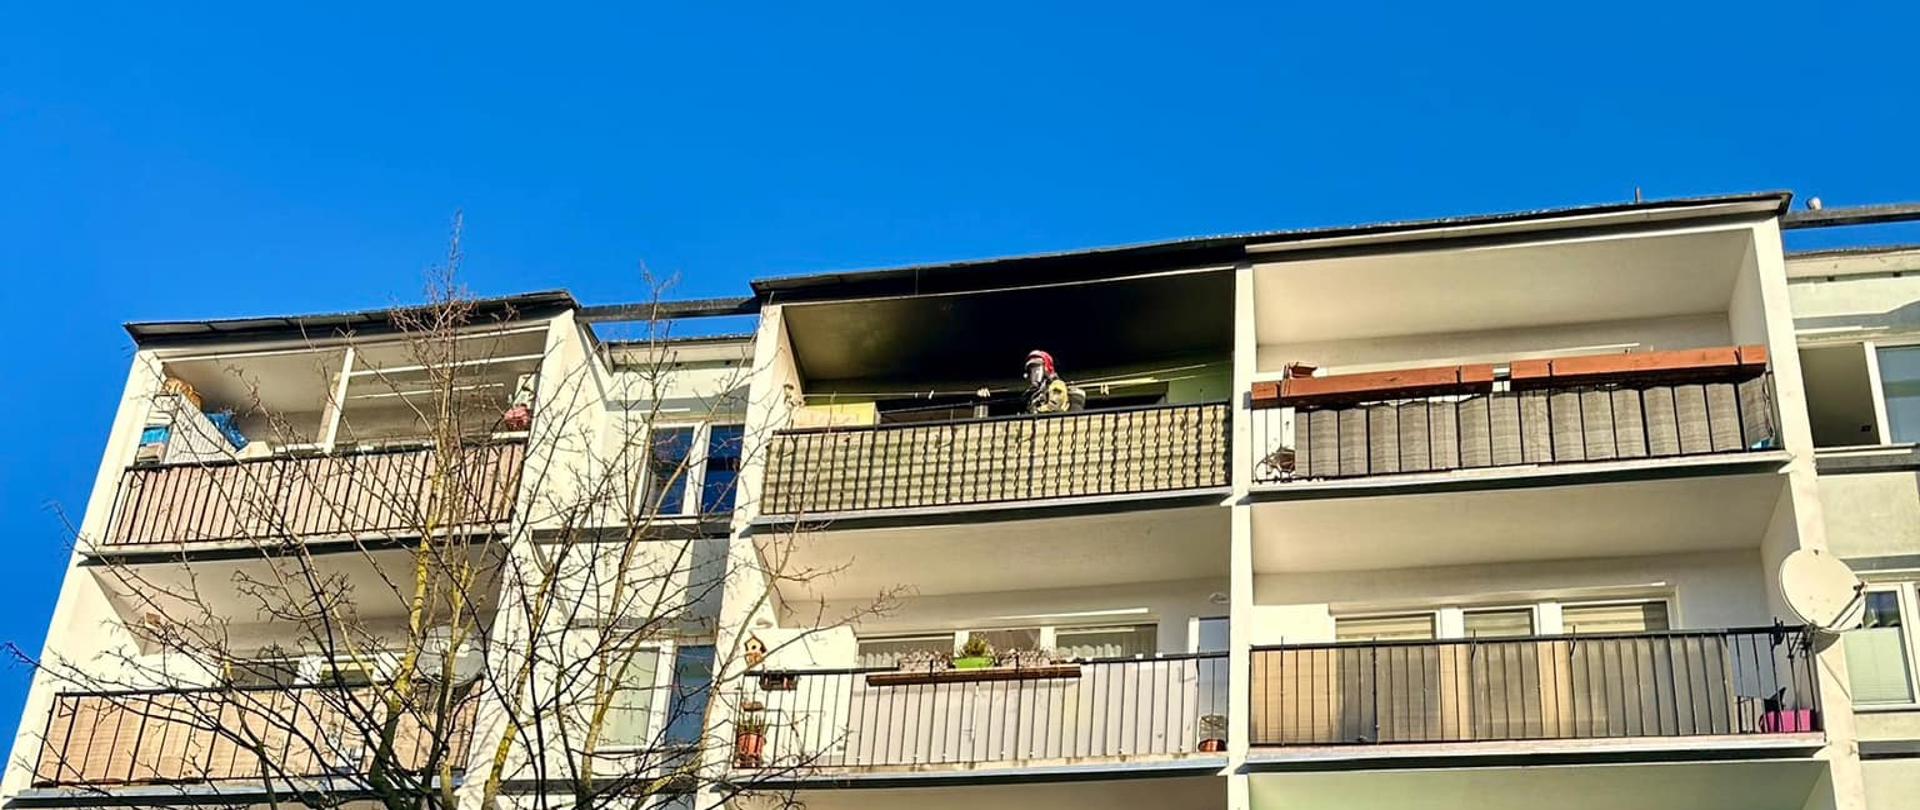 Na zdjęciu fragment wielorodzinnego budynku mieszkalnego z wielkiej płyty z dużymi balkonami. Na silnie okopconym balkonie najwyższej piątej kondygnacji widoczna postać strażaka w czerwonym hełmie na głowie. Na pierwszym planie pozbawiona liści korona niewielkiego drzewa. W tle błękitne bezchmurne niebo.